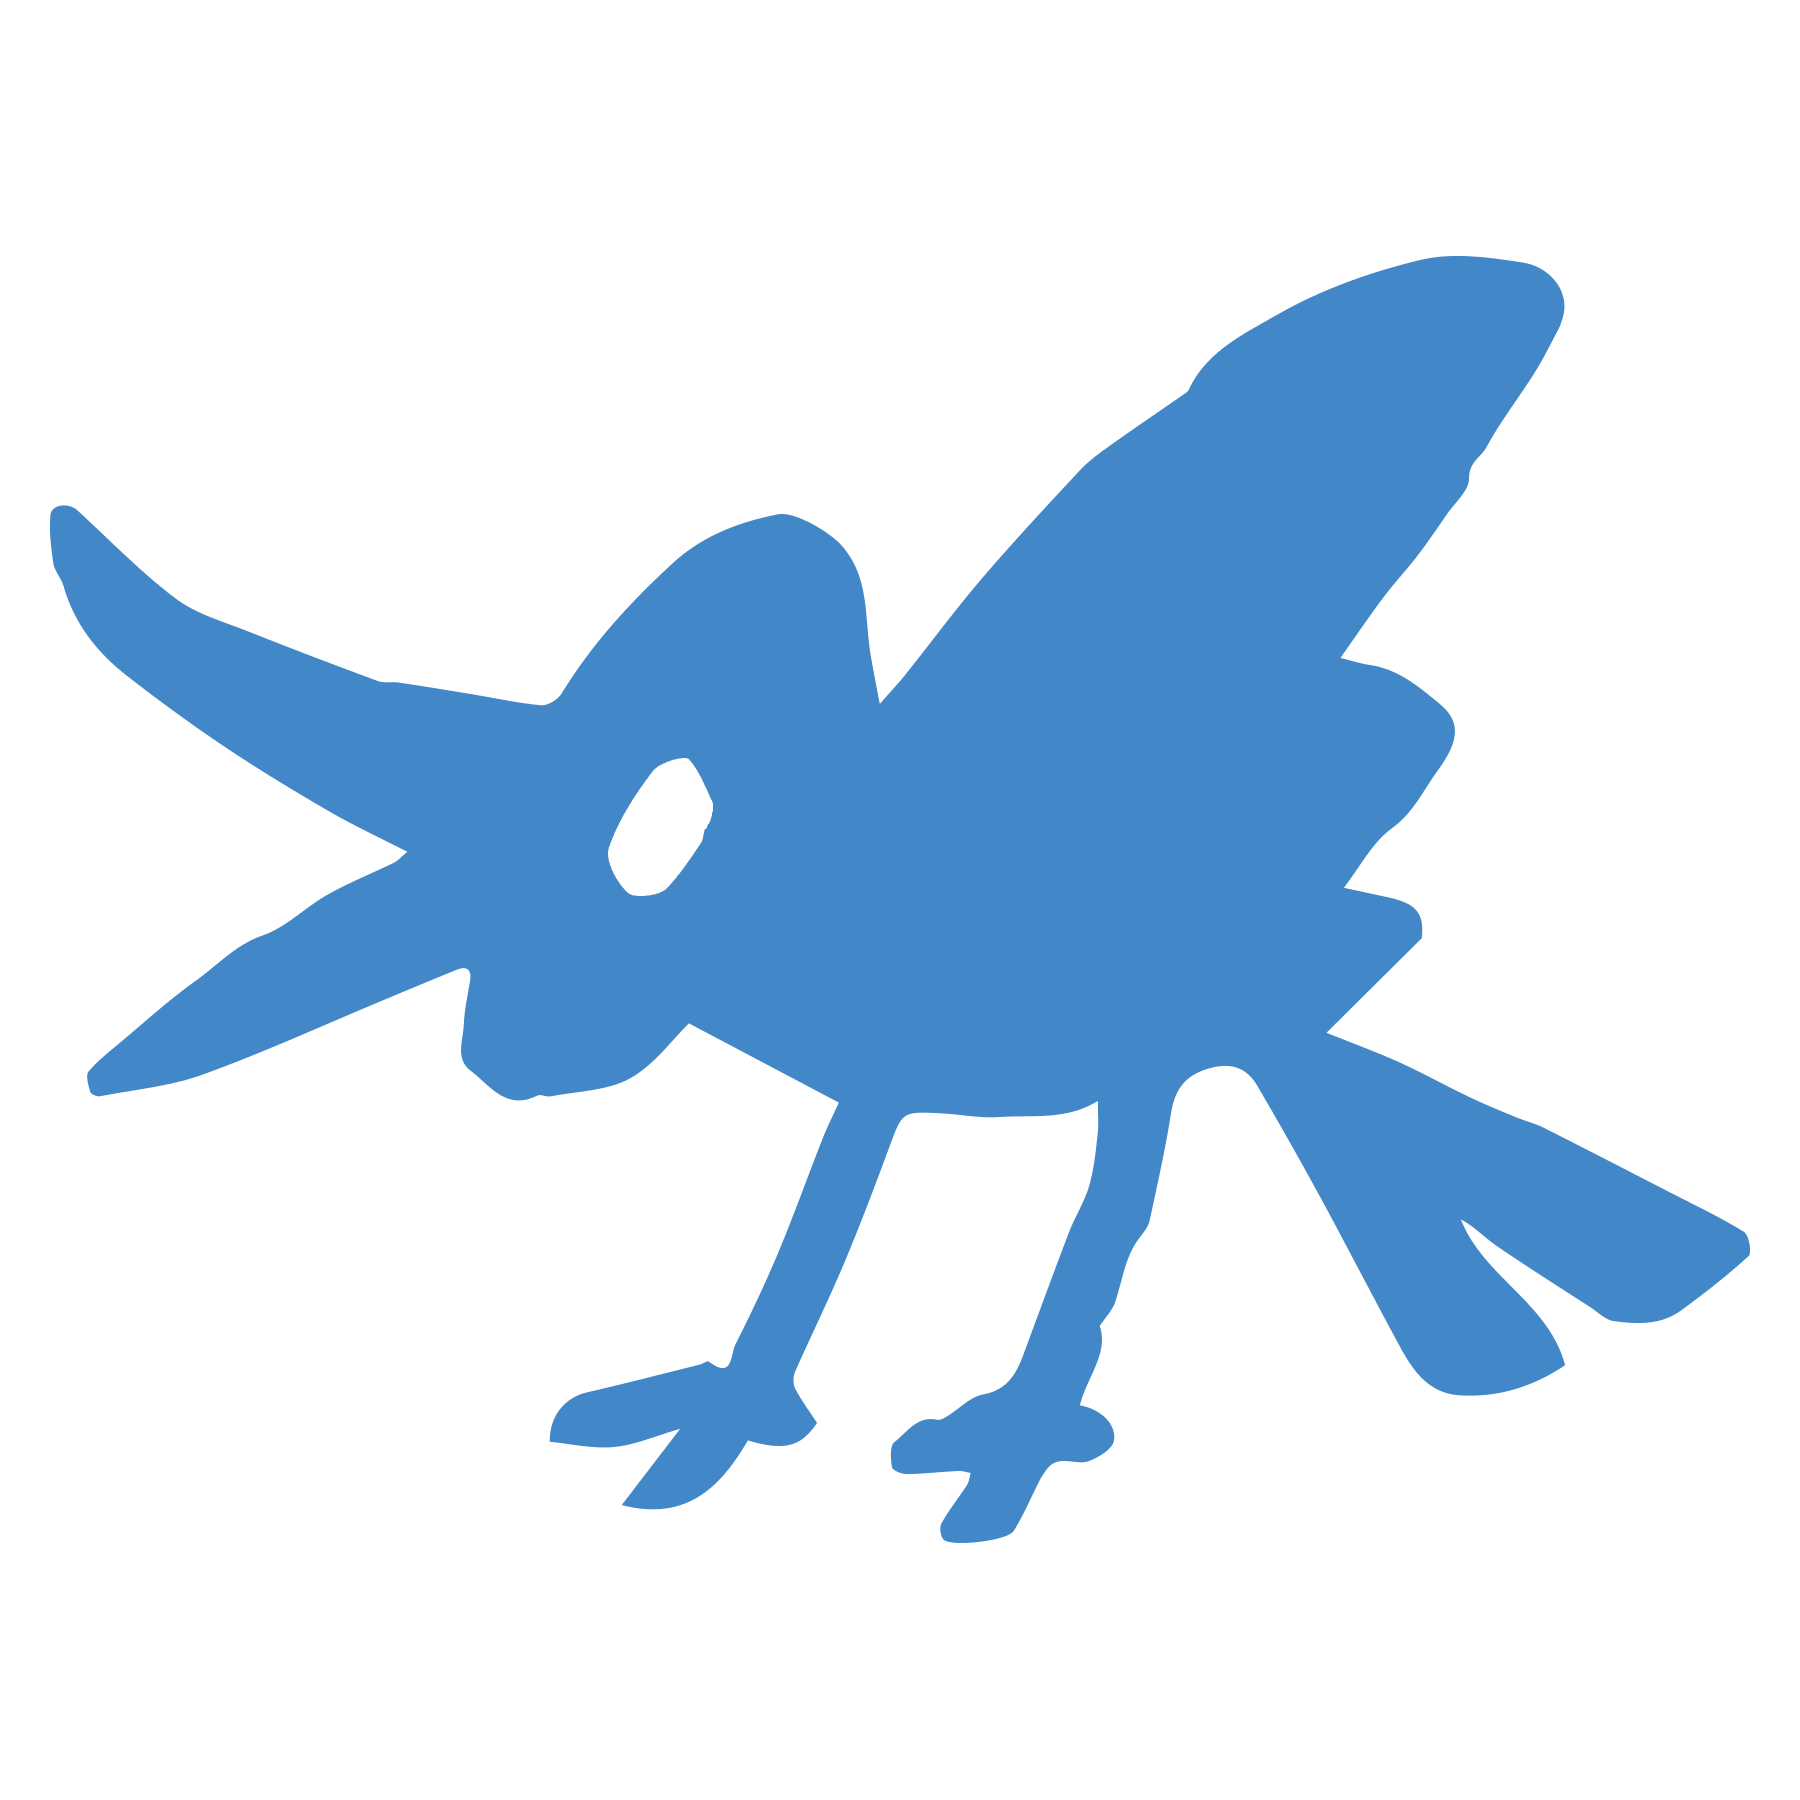 Twitterっぽい青い鳥 イラスト素材 超多くの無料かわいいイラスト素材